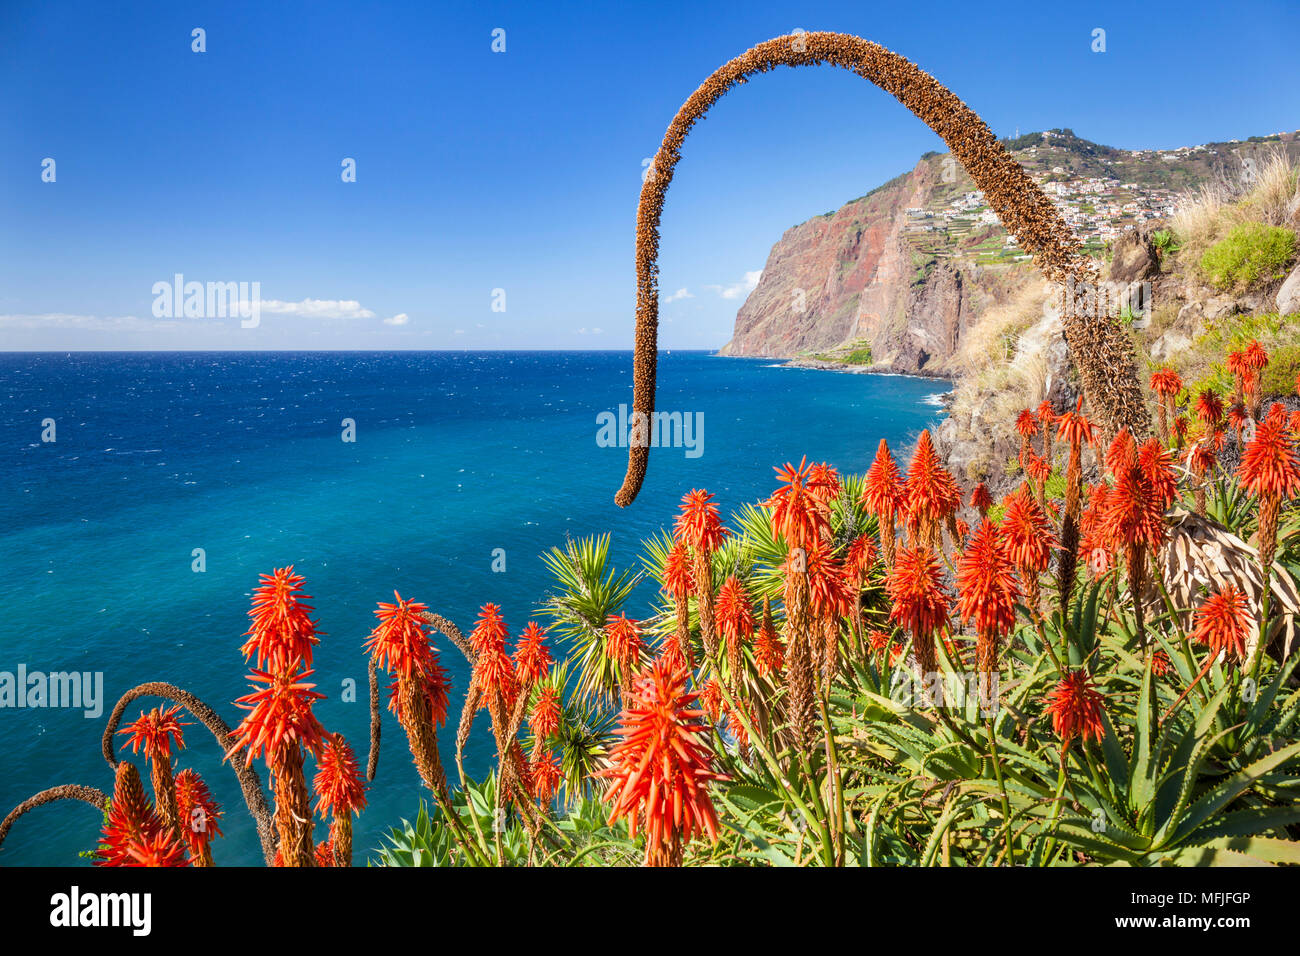 La scogliera sul mare promontorio Cabo Girao con red Kranz aloe (Aloe arborescens) e Agave attenuata, Madeira, Portogallo, Atlantico, Europa Foto Stock